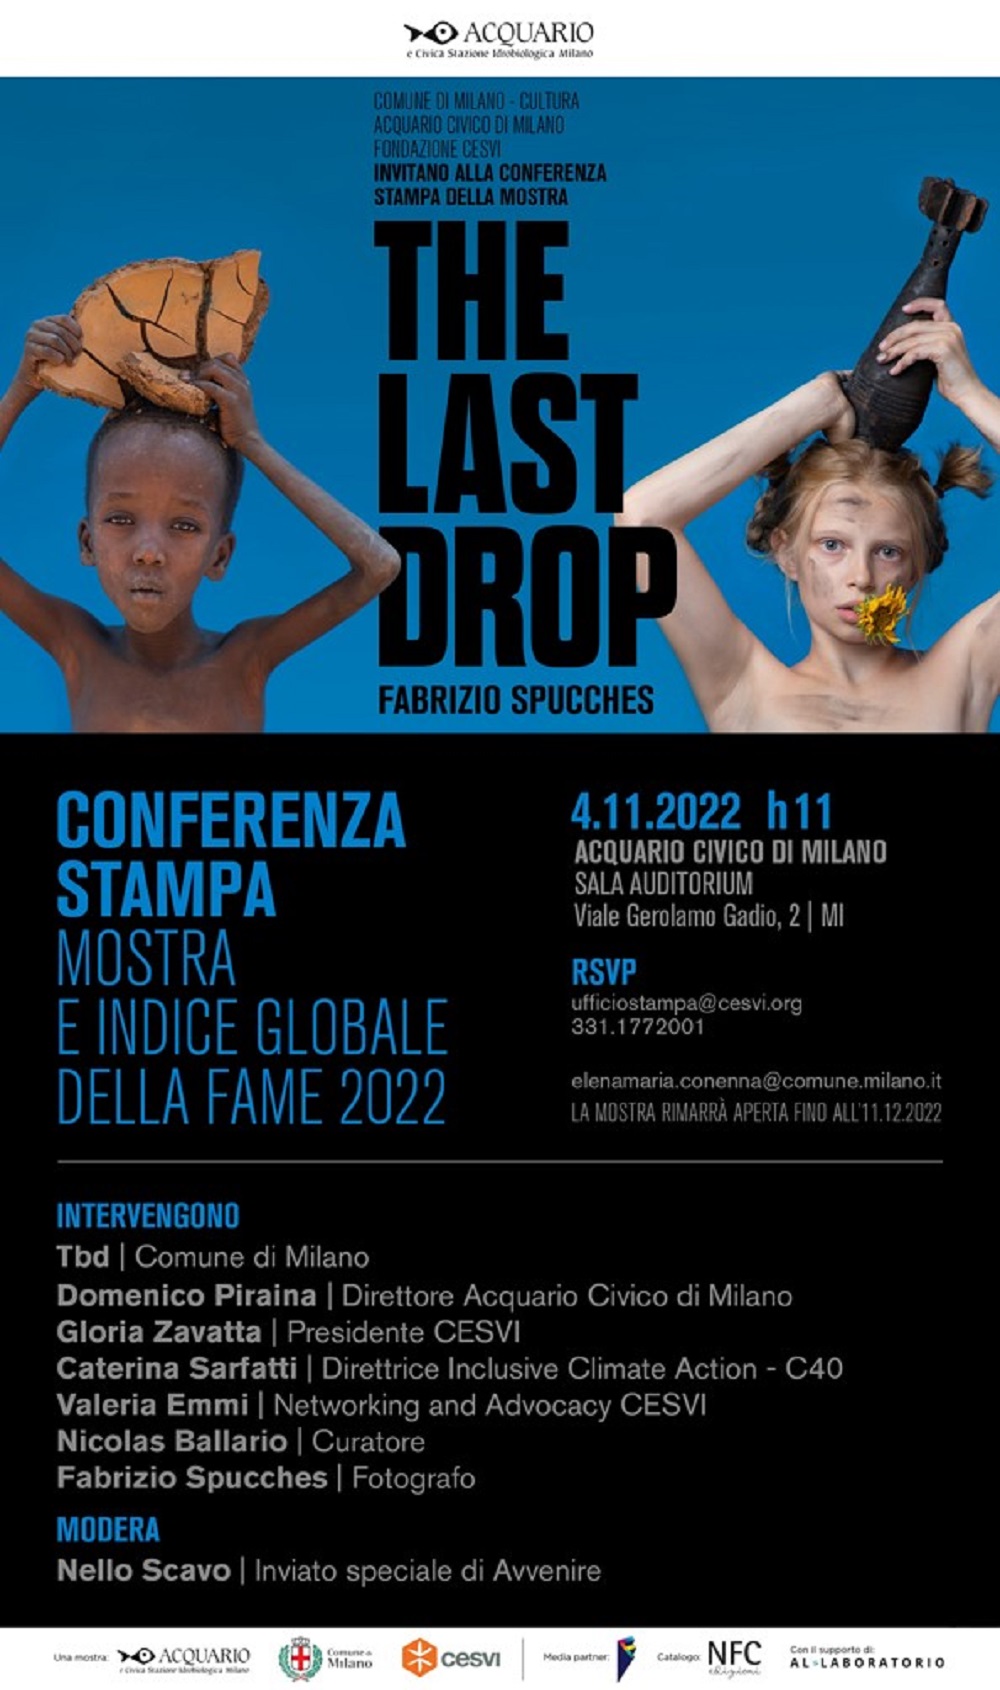 THE LAST DROP | Fabrizio Spucches per Fondazione CESVI